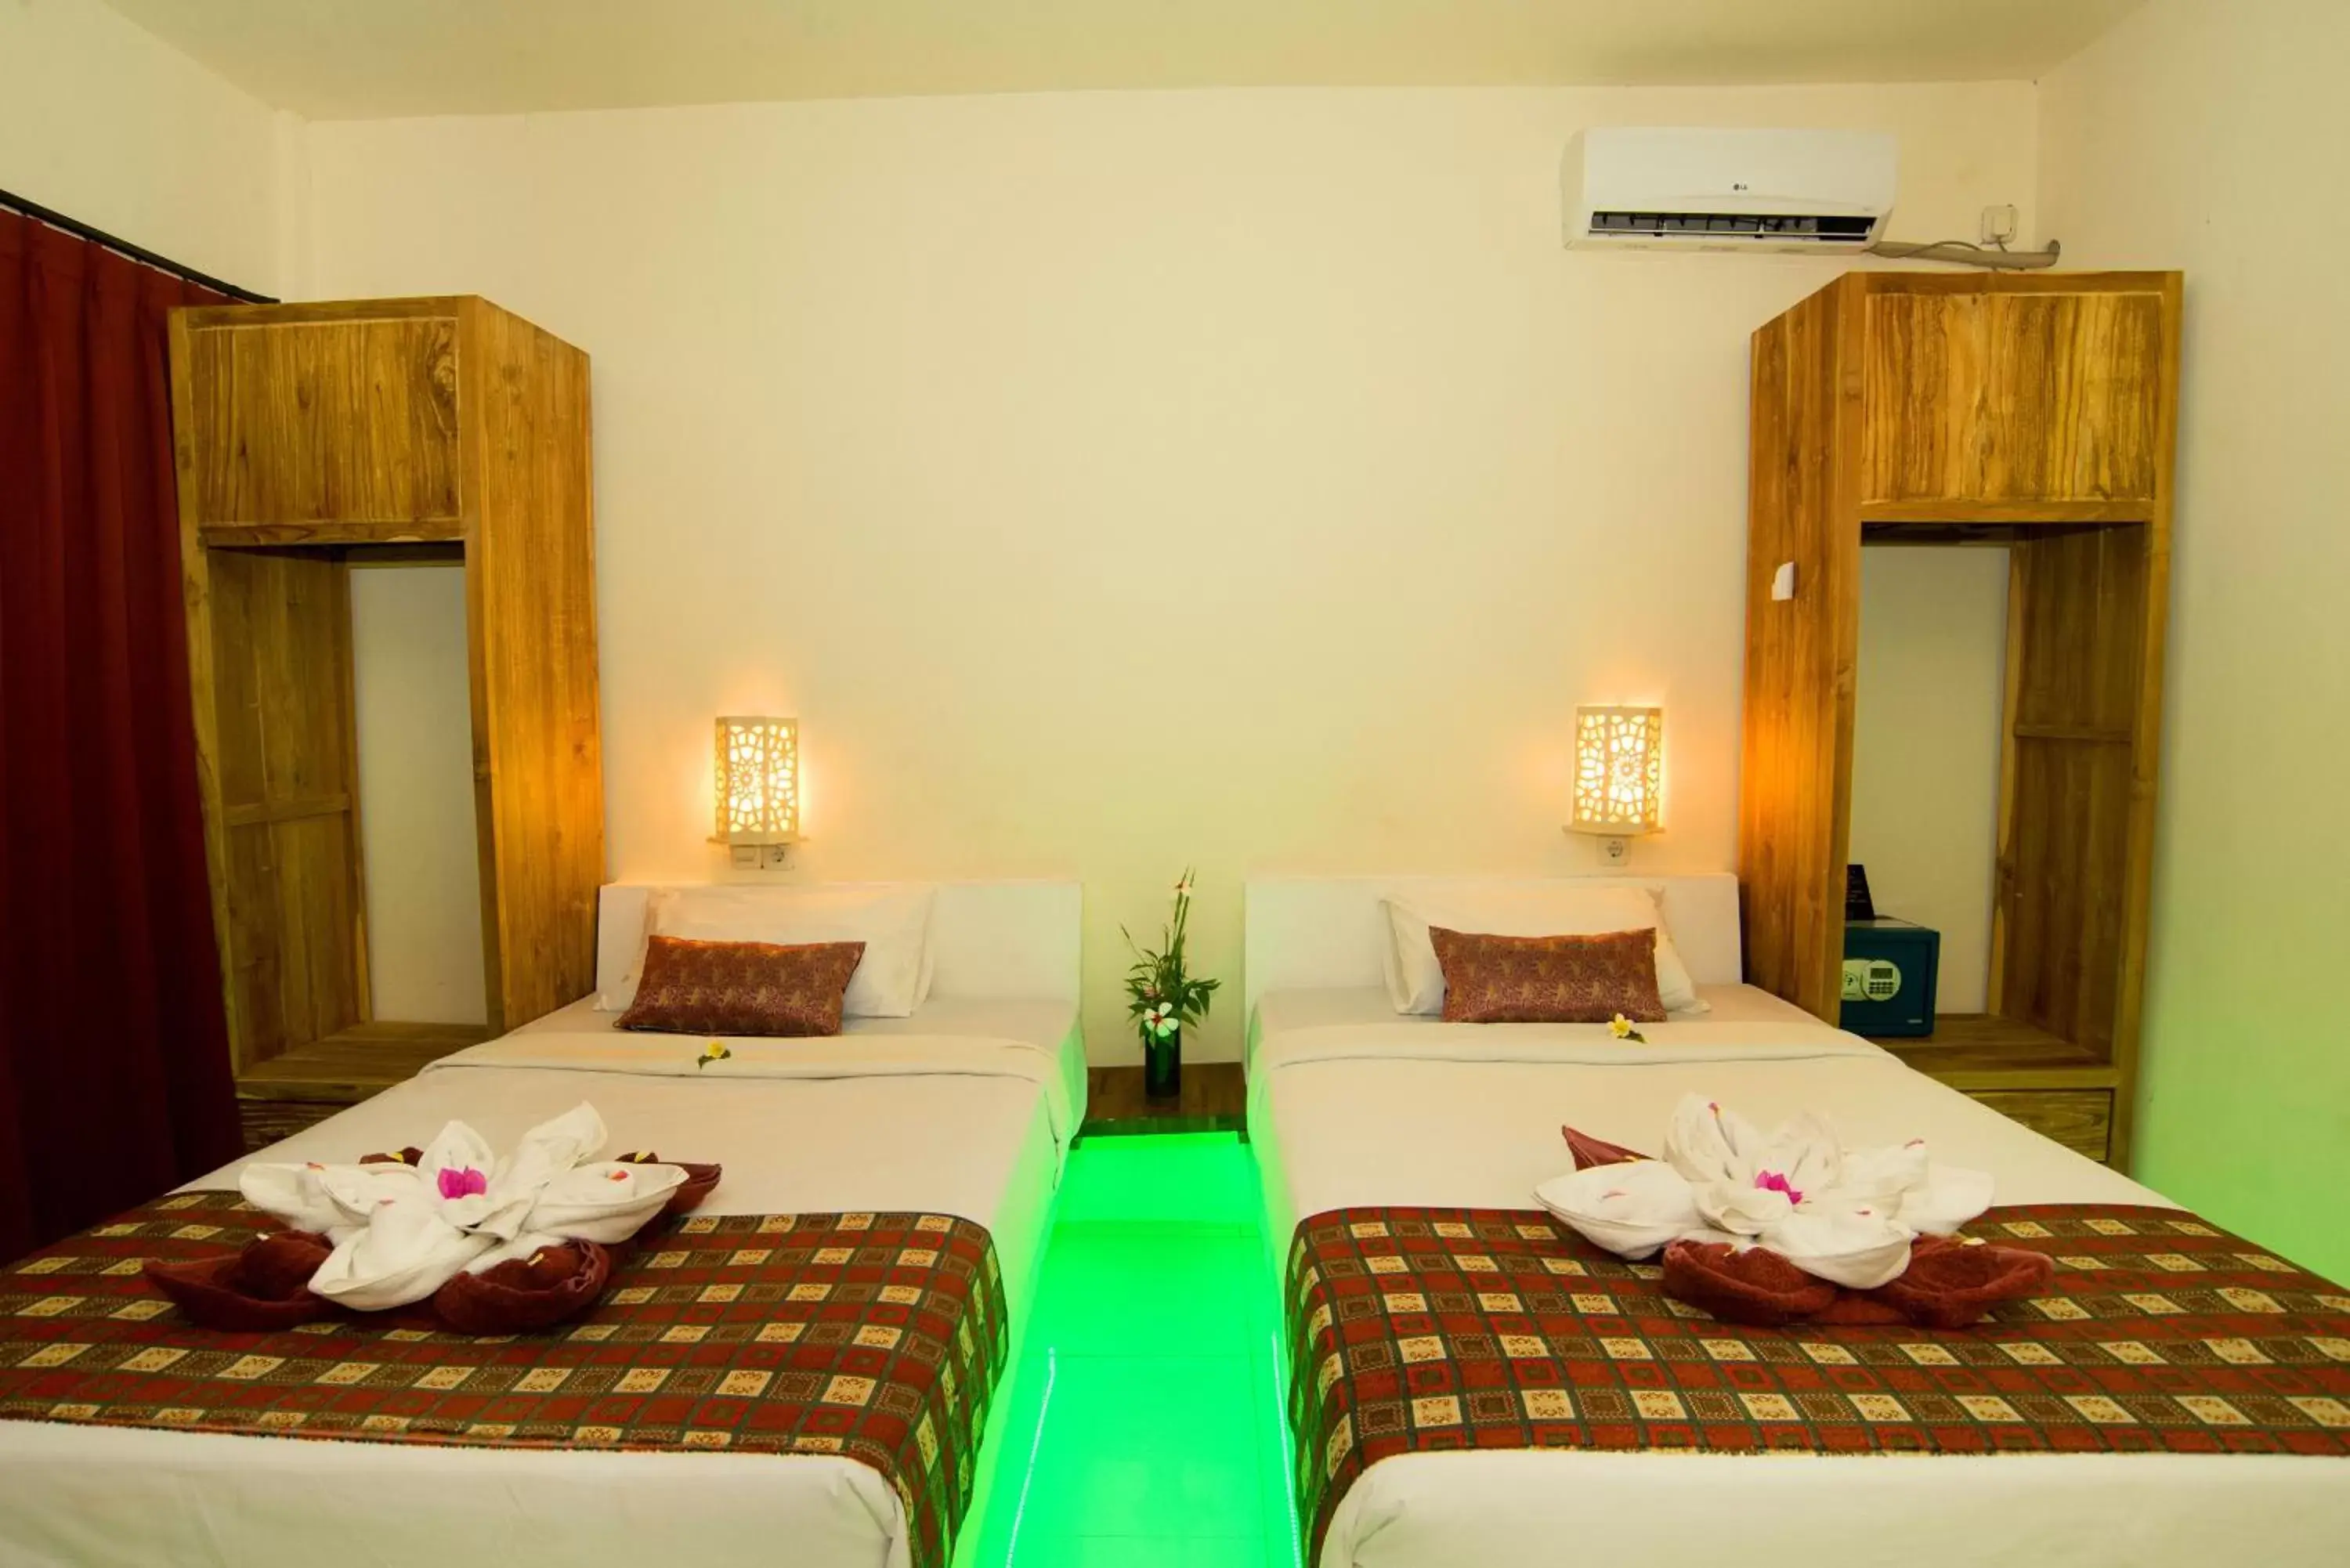 Bedroom, Bed in Bel Air Resort